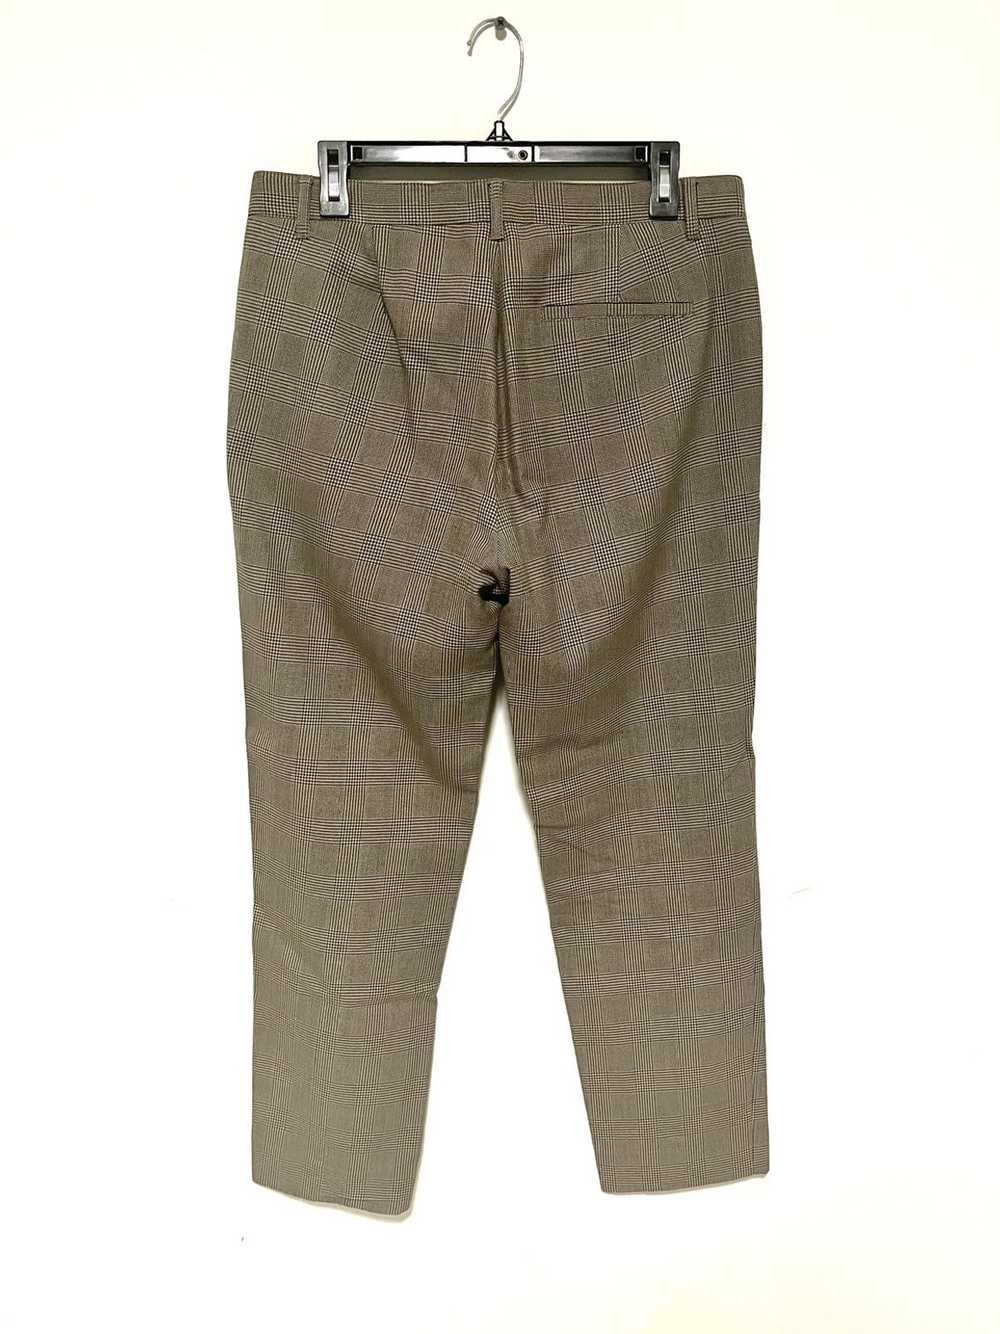 A.P.C. APC Plaid Trousers - image 5